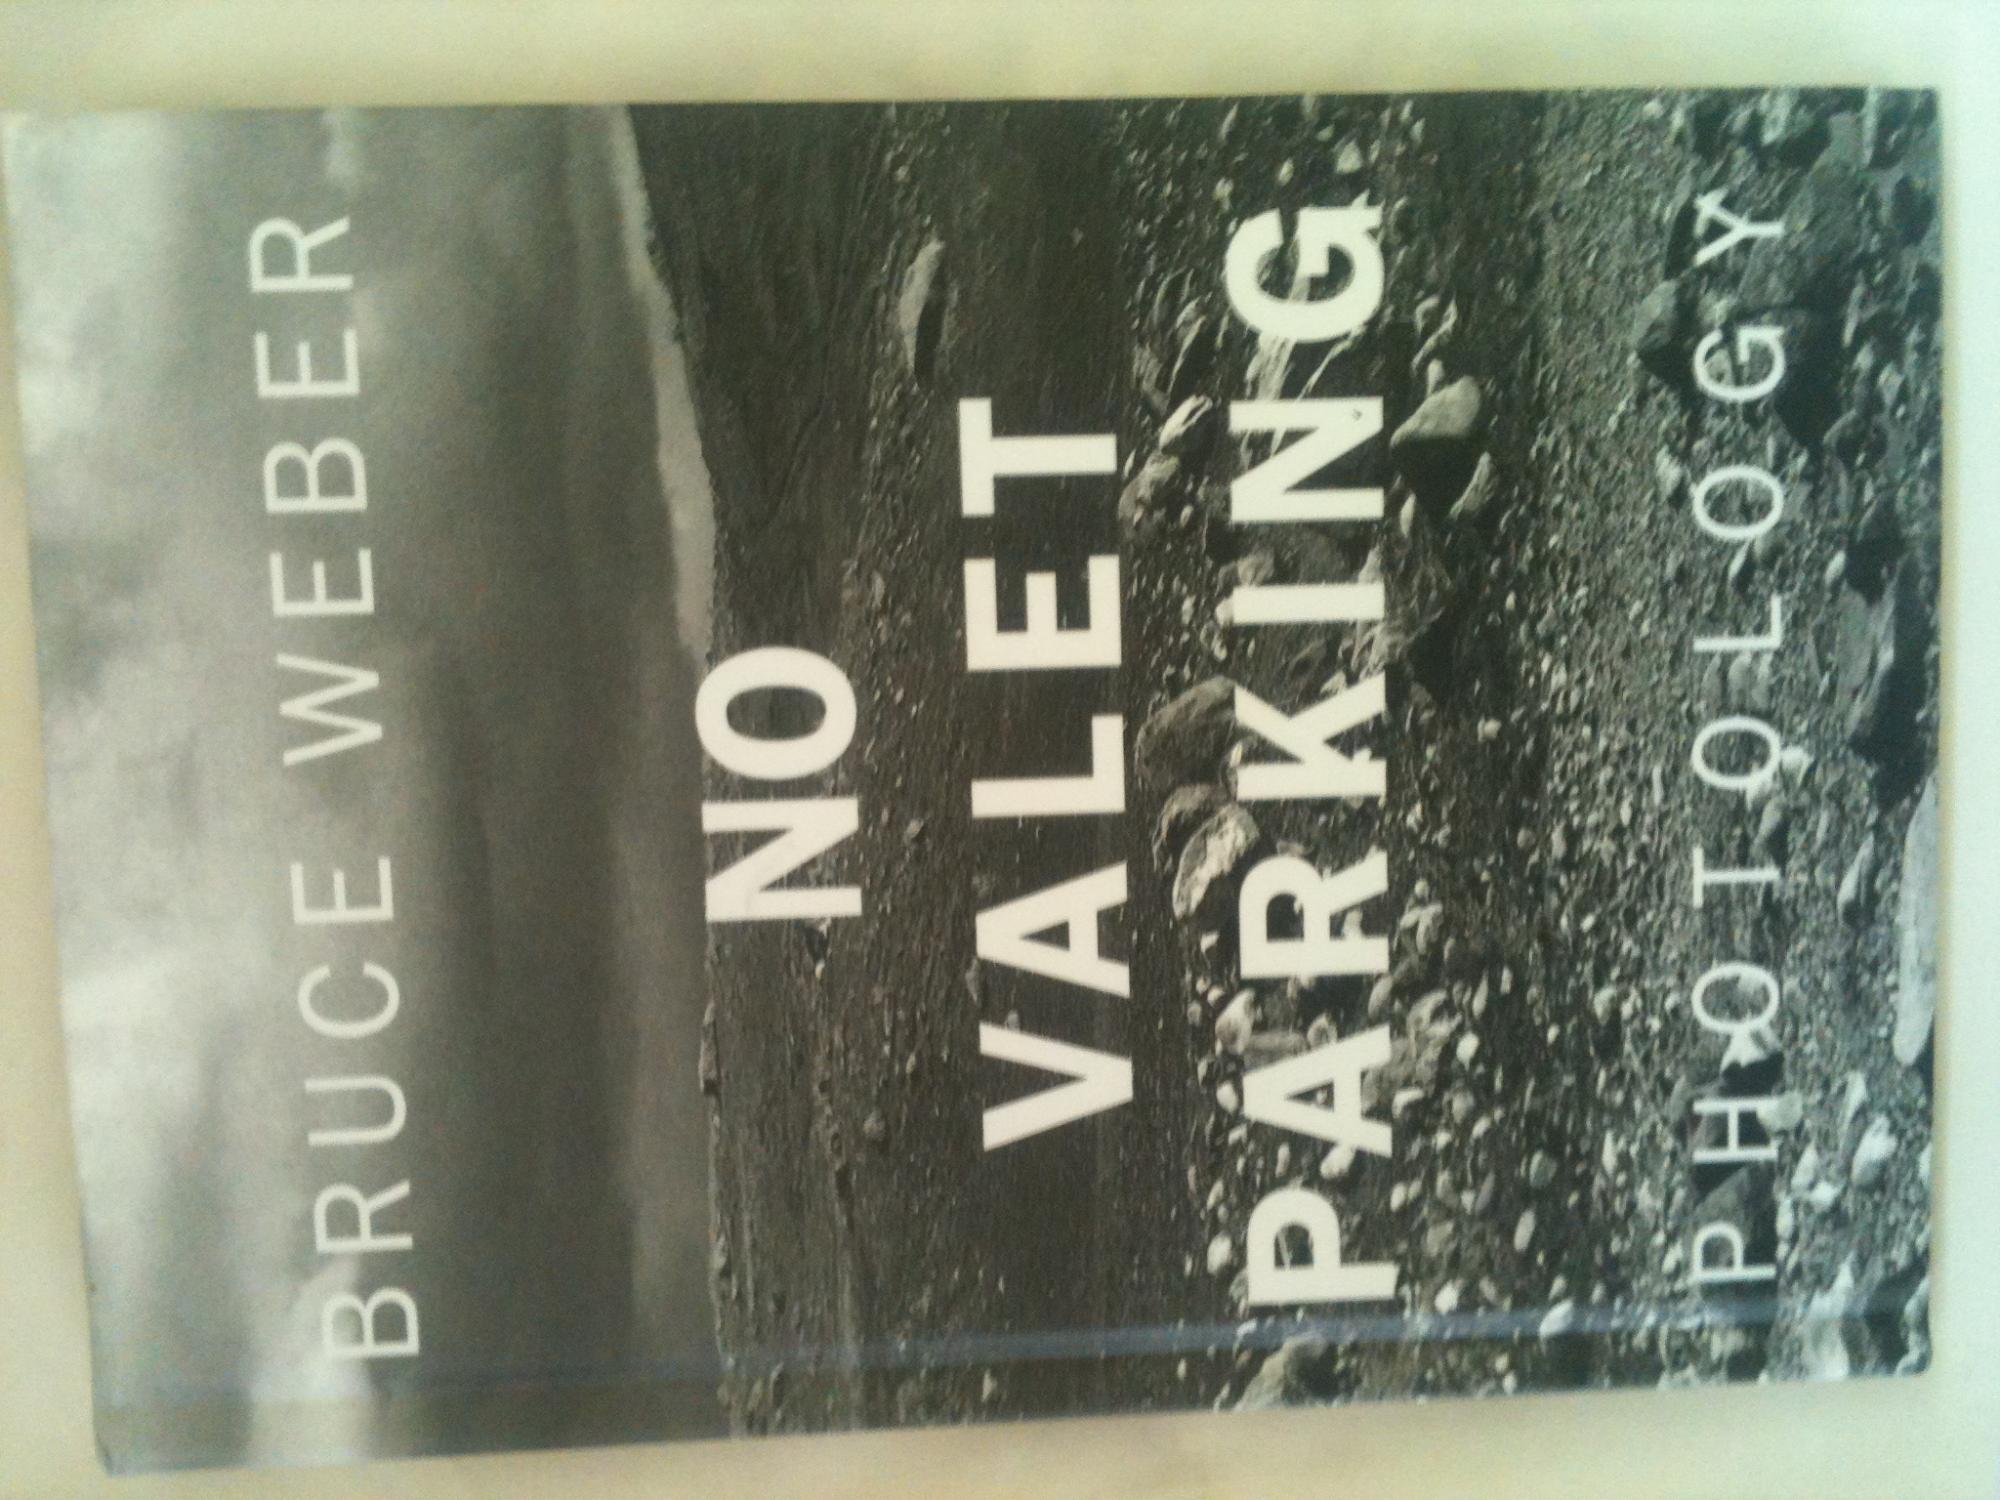 レア] Bruce Weber / No Valet Parking - library.iainponorogo.ac.id